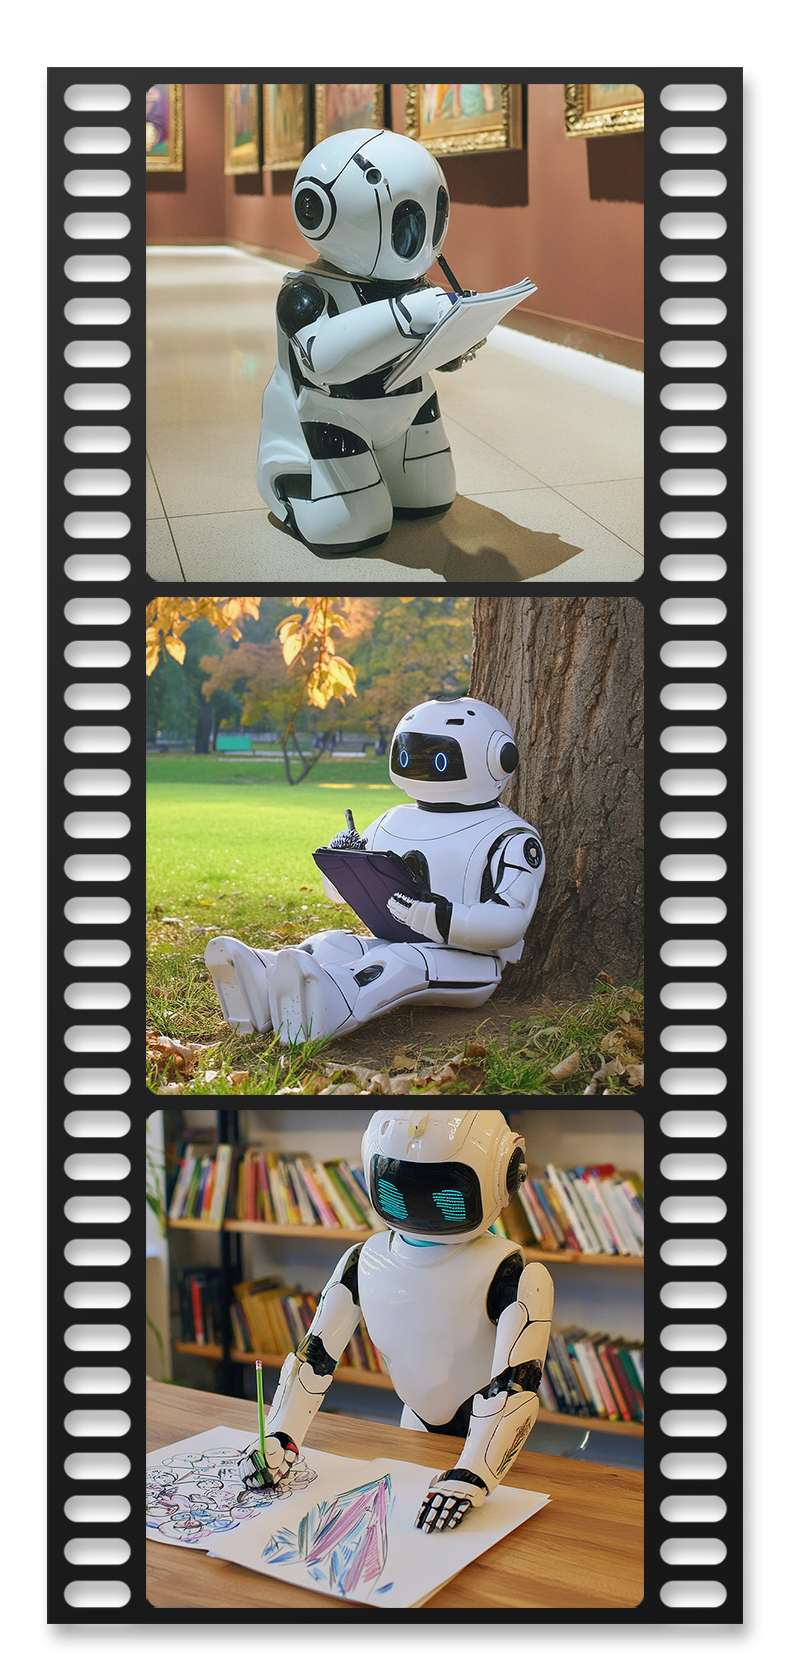 Images générées avec l'IA Adobe Firely - un petit robot est au musée, puis il dessine sous un arbre et à un bureau